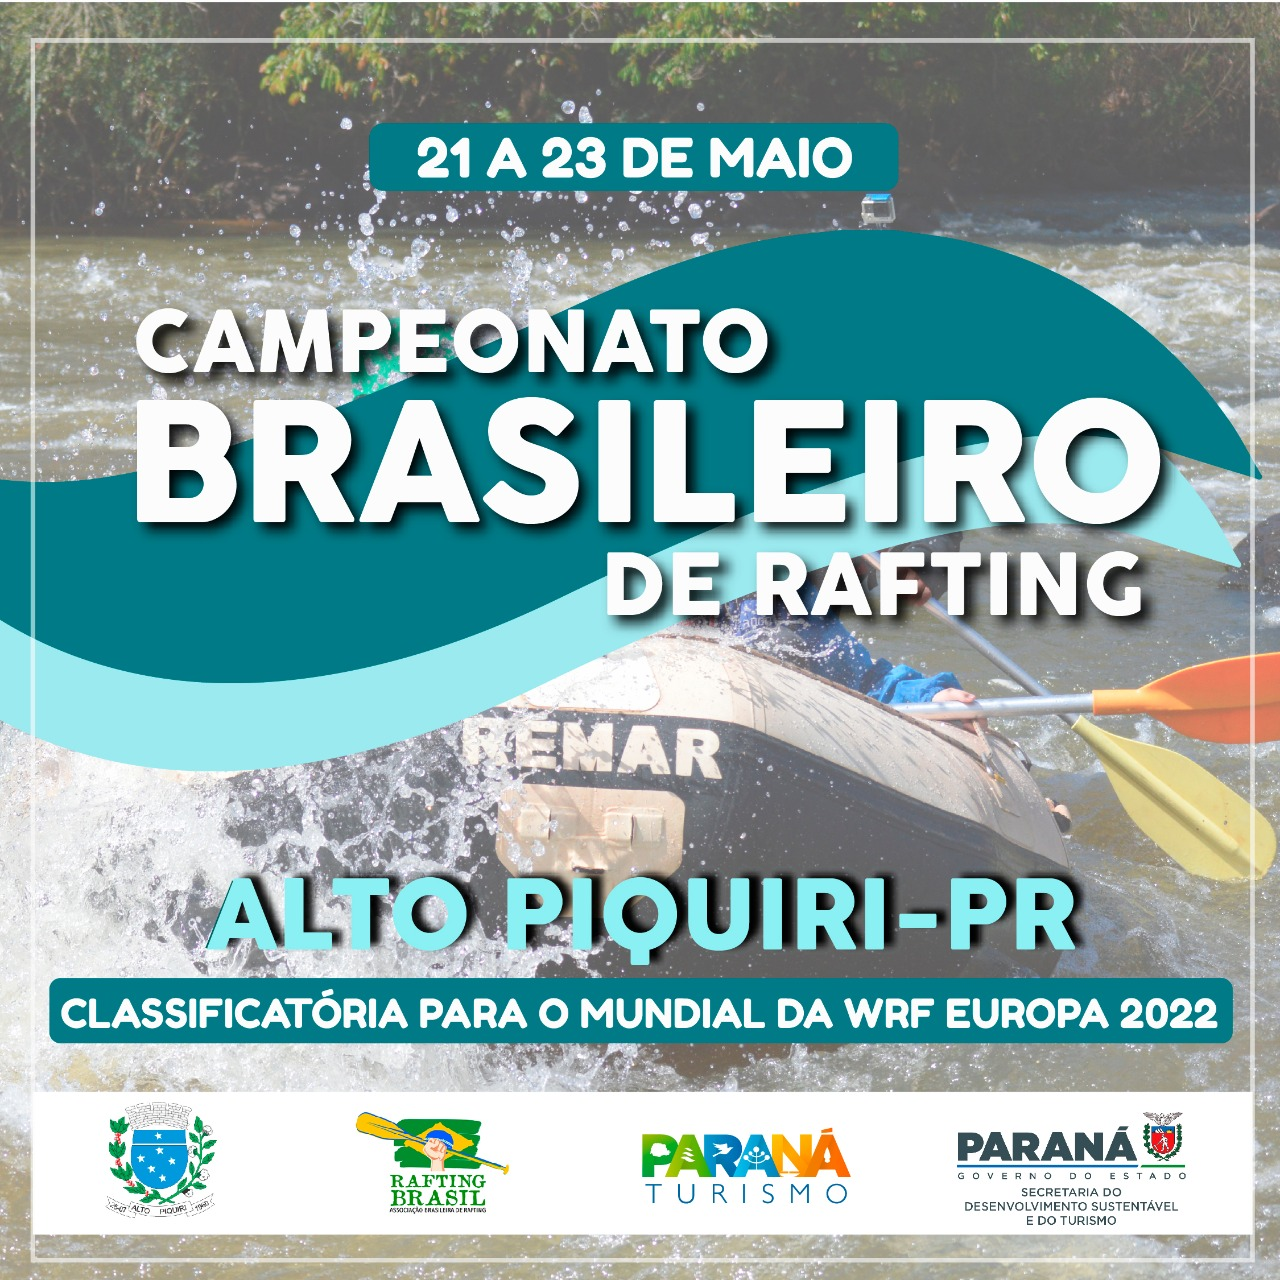 Campeonato Brasileiro de Rafting - Alto Piquiri